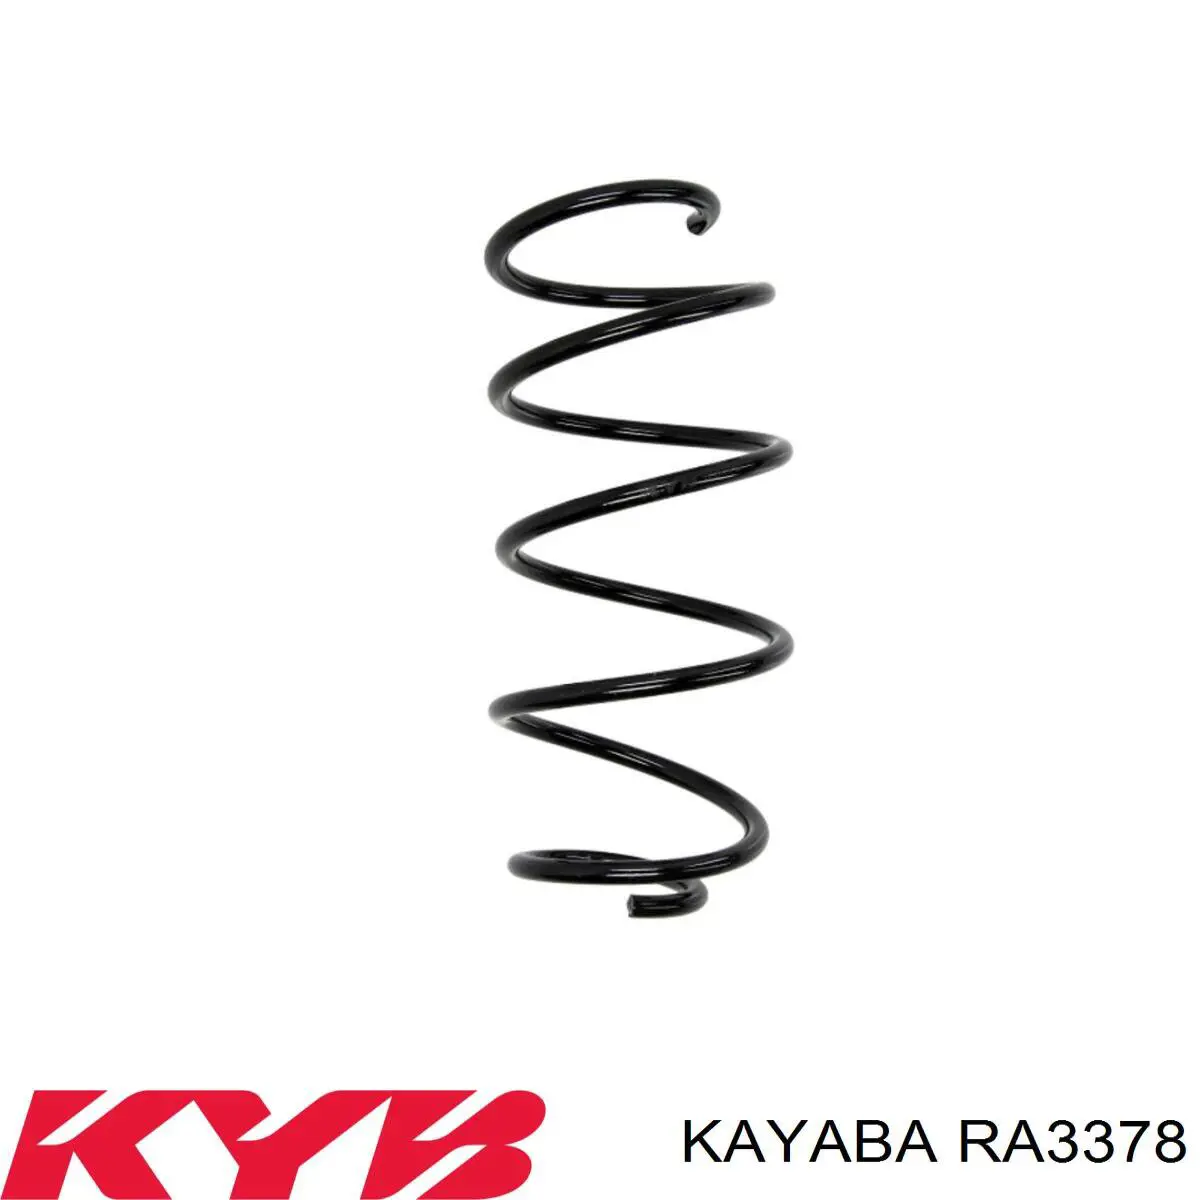 RA3378 Kayaba mola dianteira